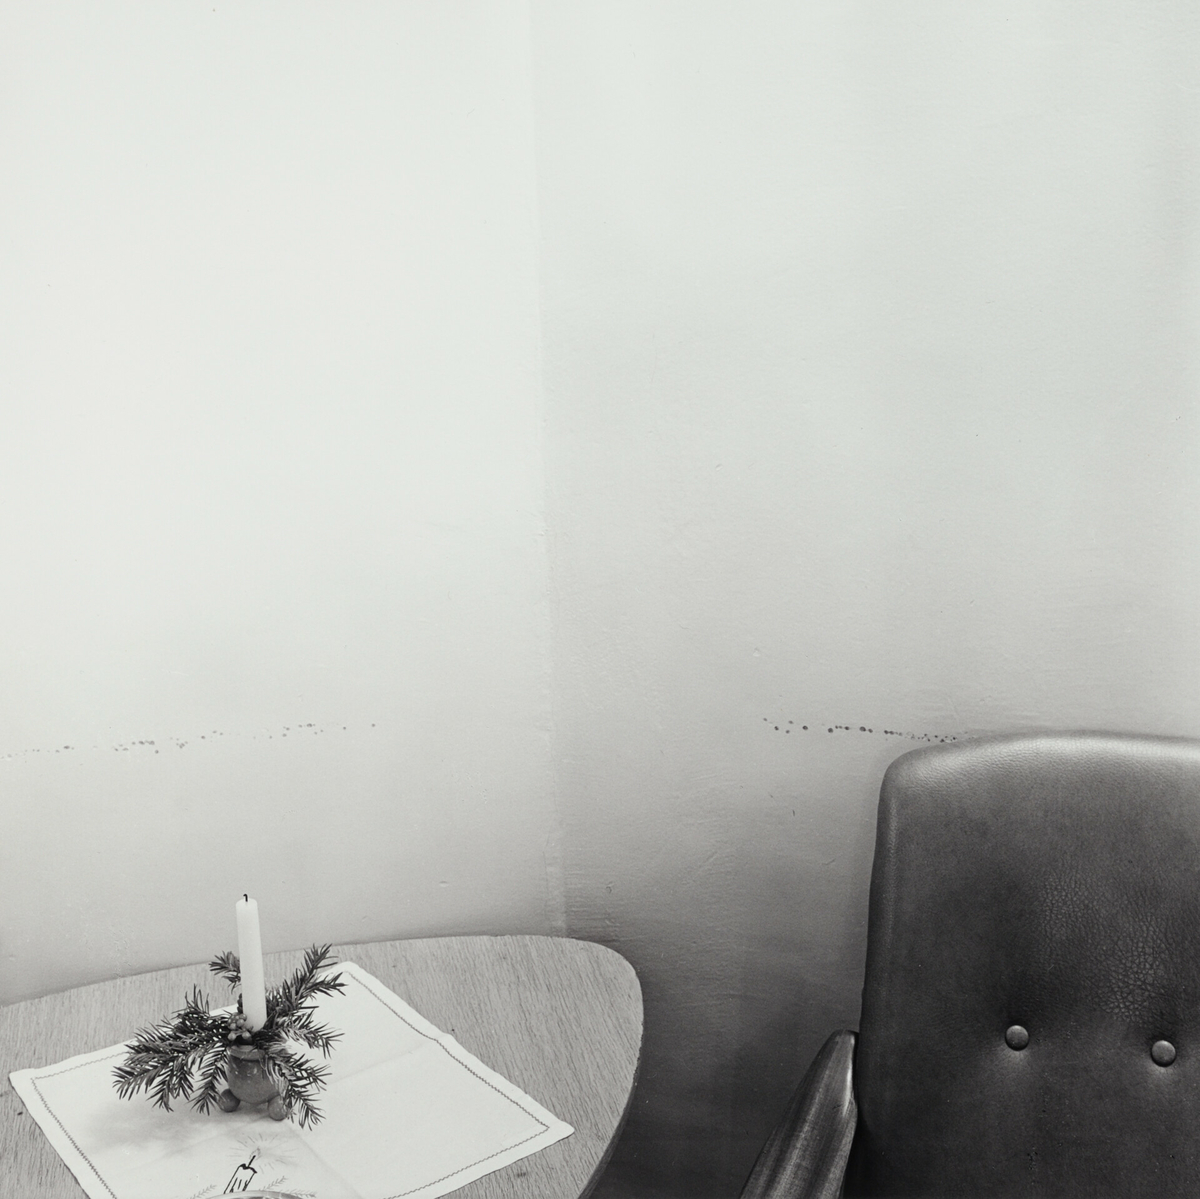 Et bord med juleduk og en pyntet lysestake med et stearinlys. En stol står ved siden av. De hvite veggene har merker.